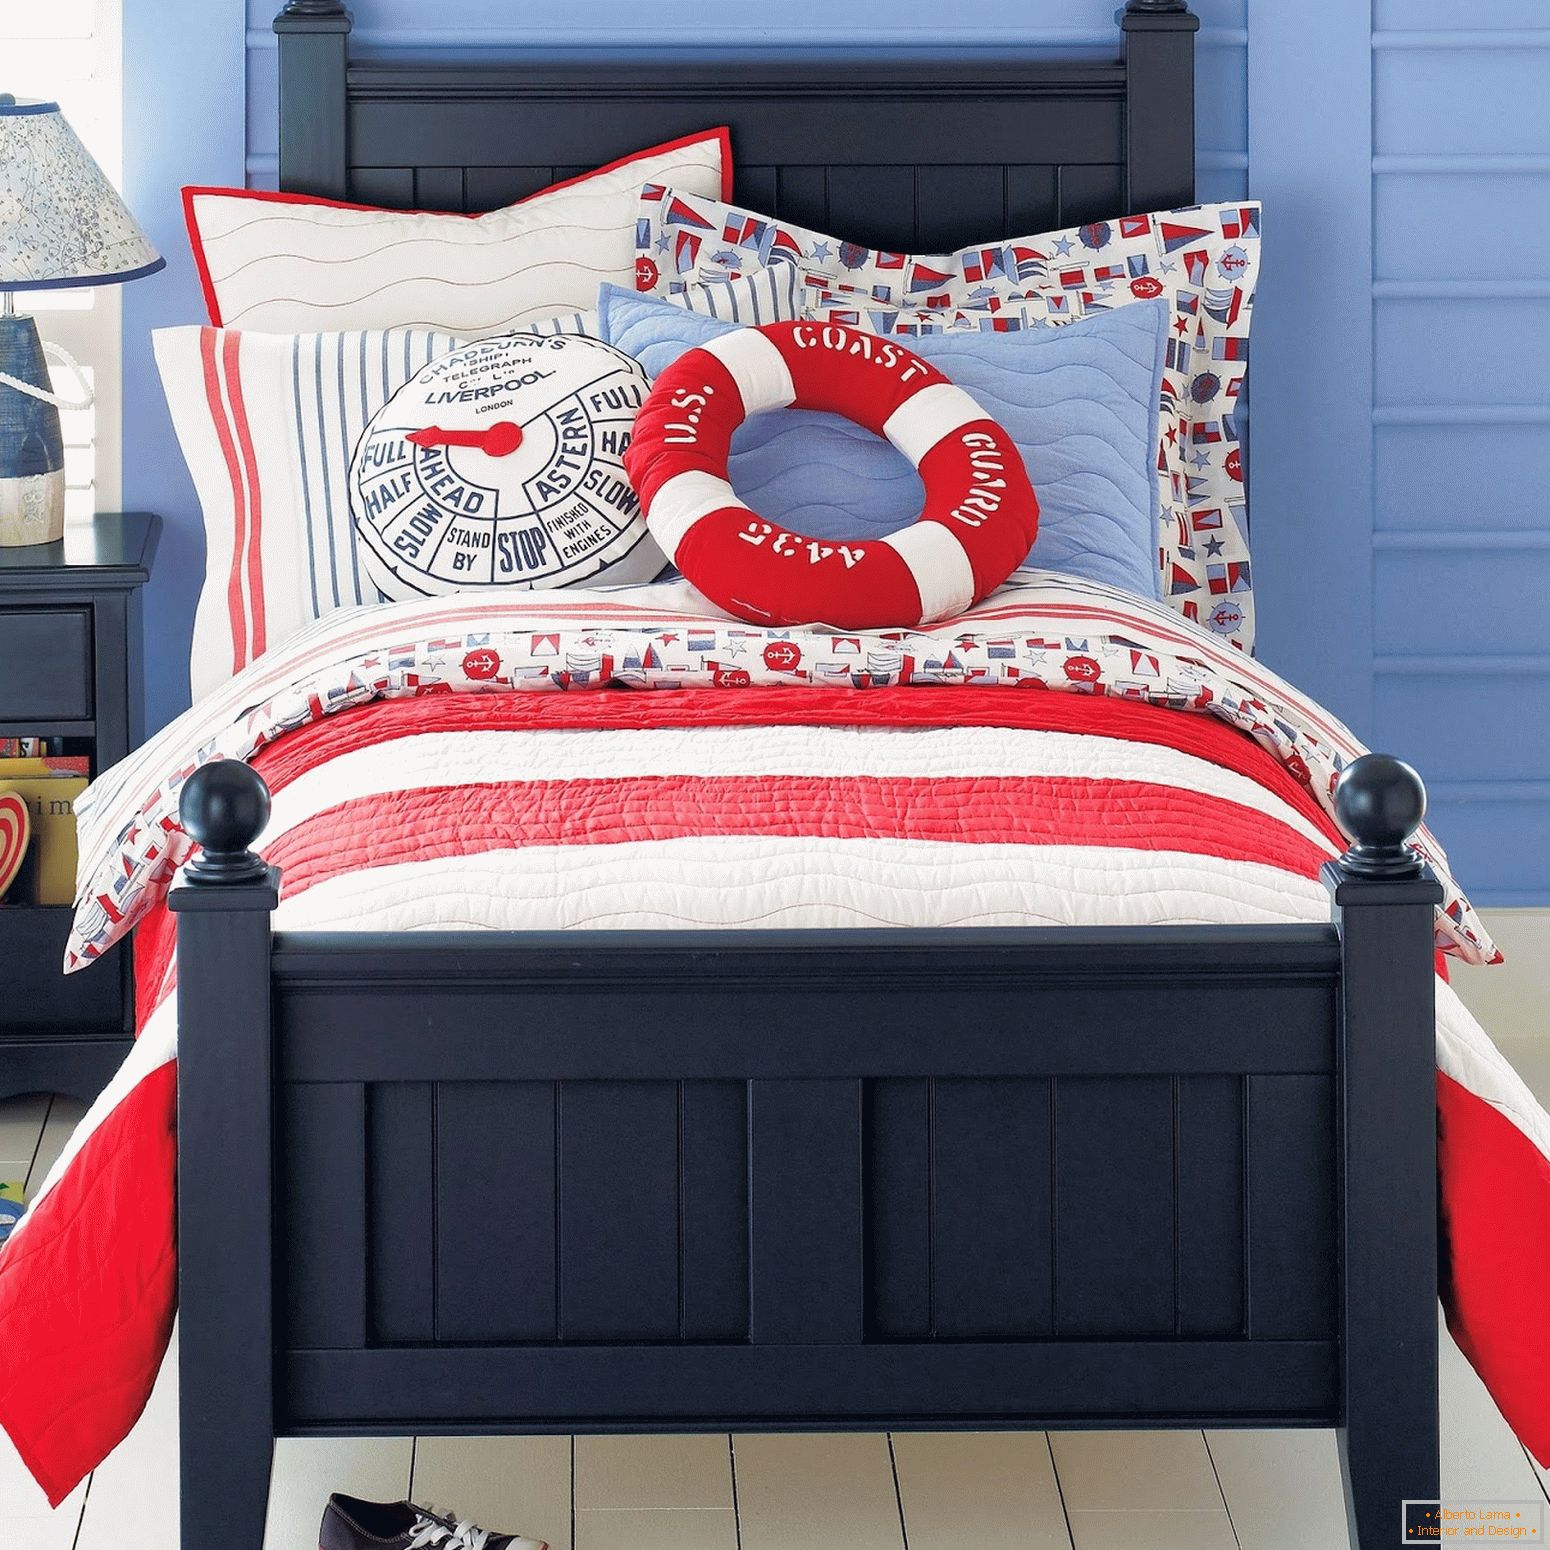 Un letto per il ragazzo di un marinaio